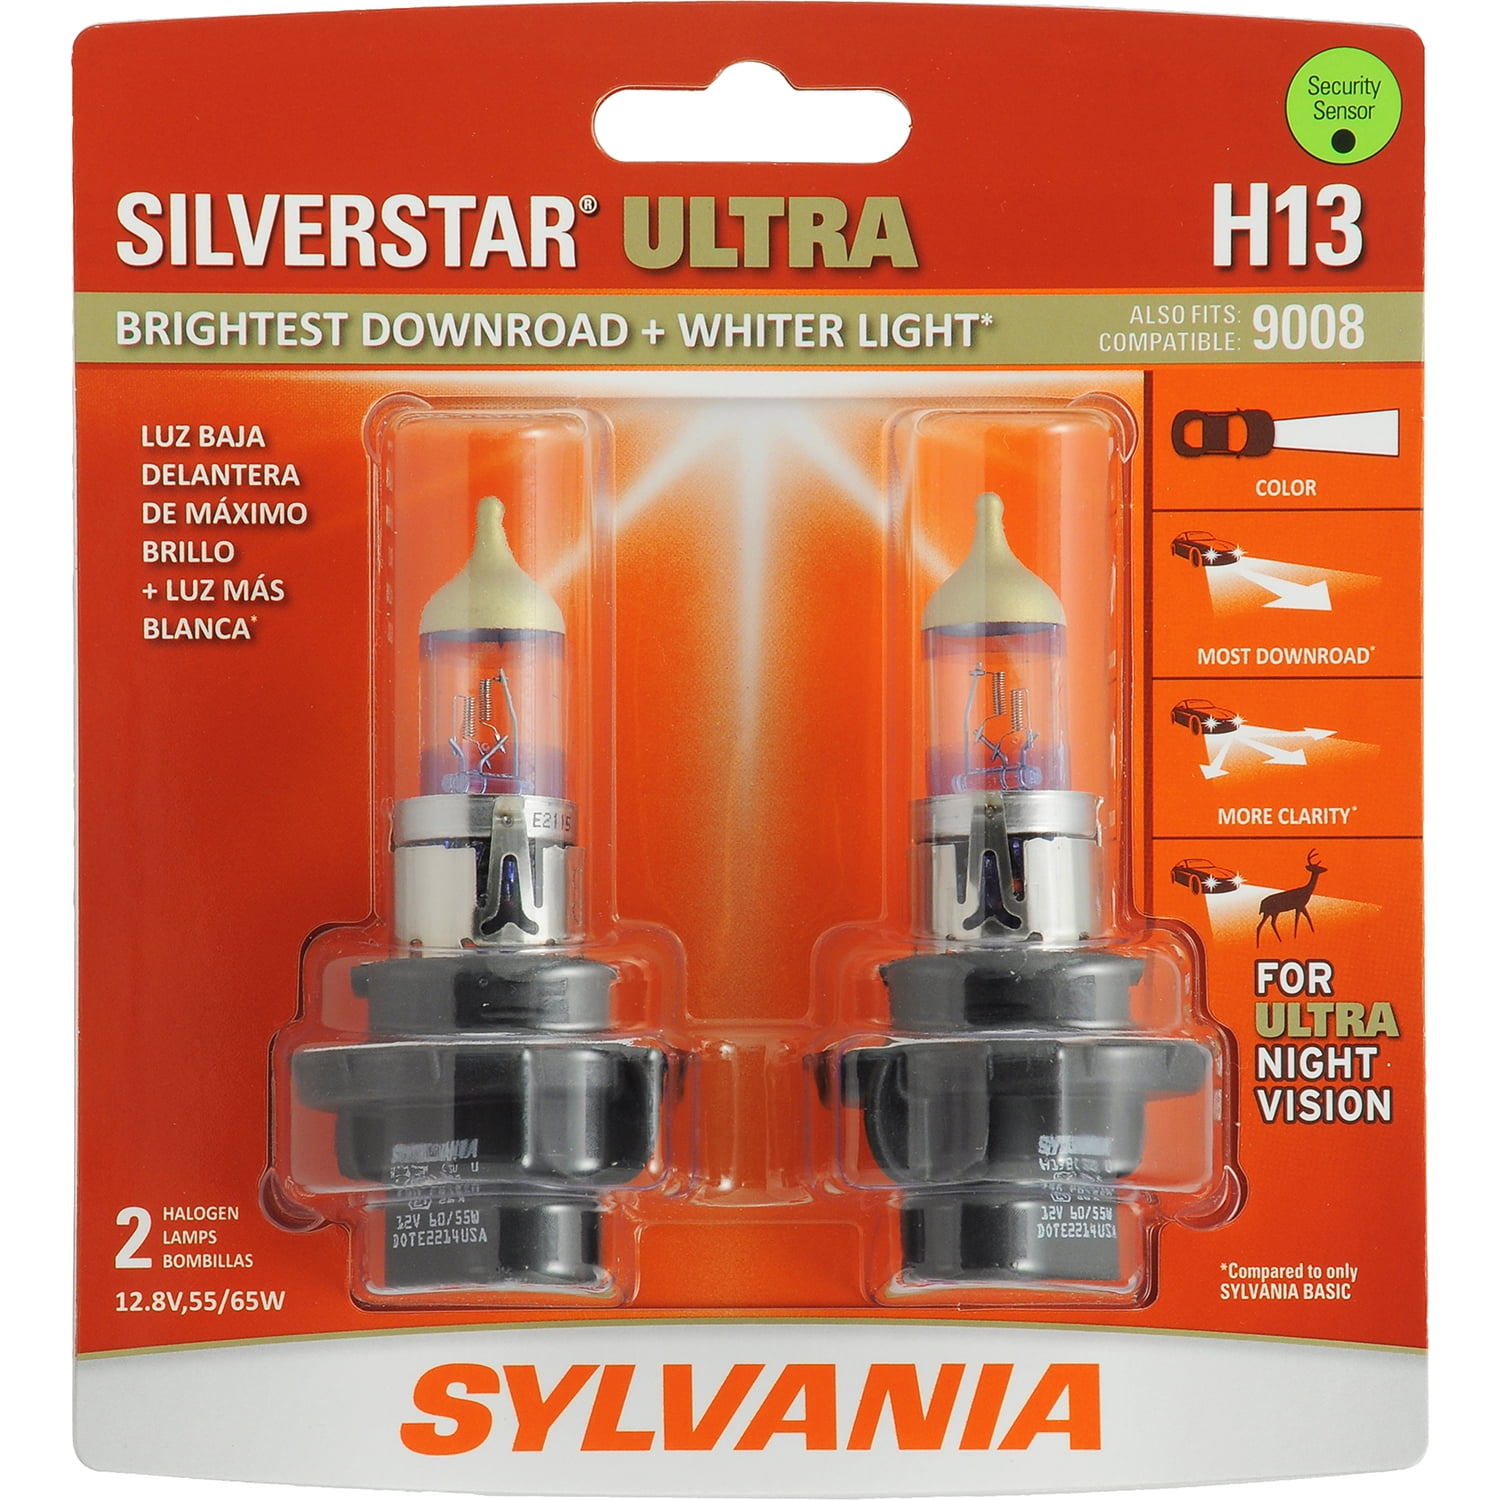 Sylvania H13 SilverStar Ultra Halogen Headlight Bulb, Pack of 2